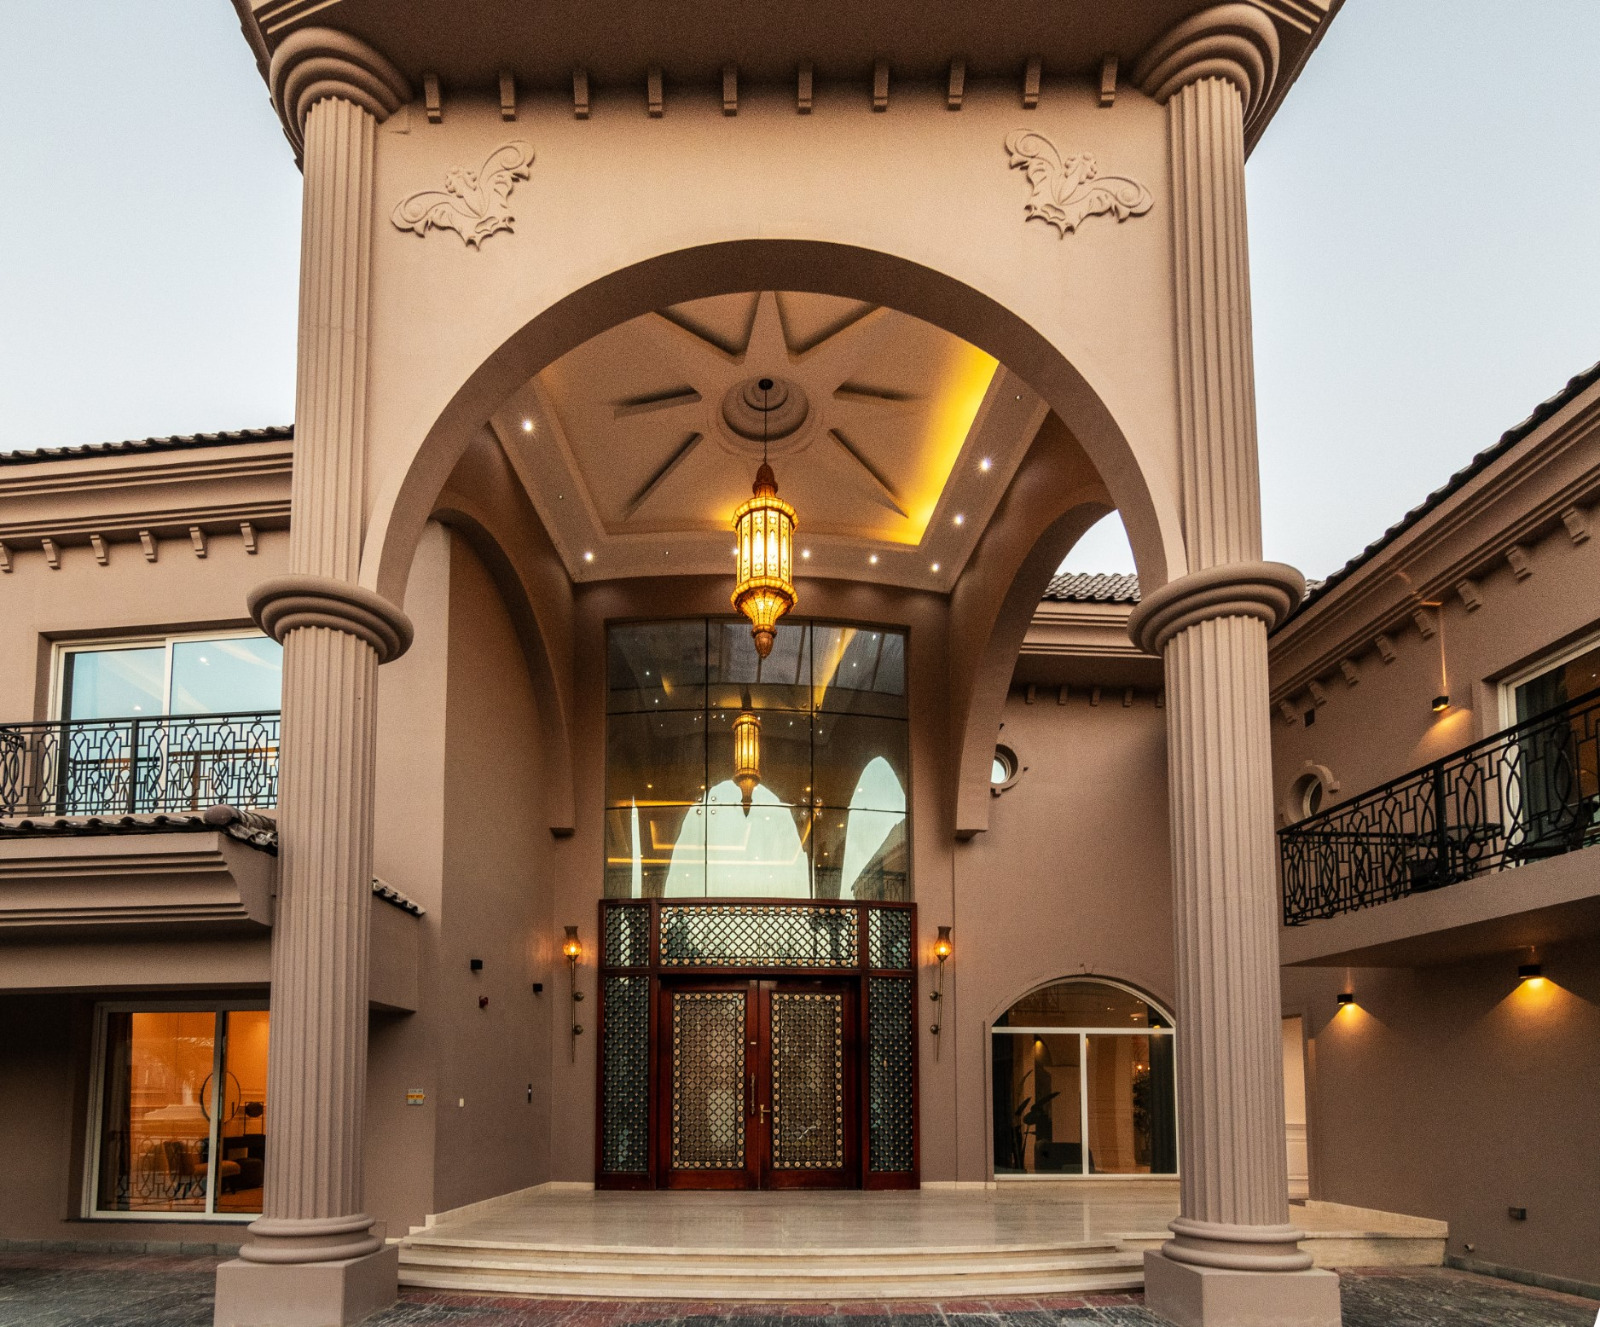 7 BR Villa in Jumeirah Golf Estates